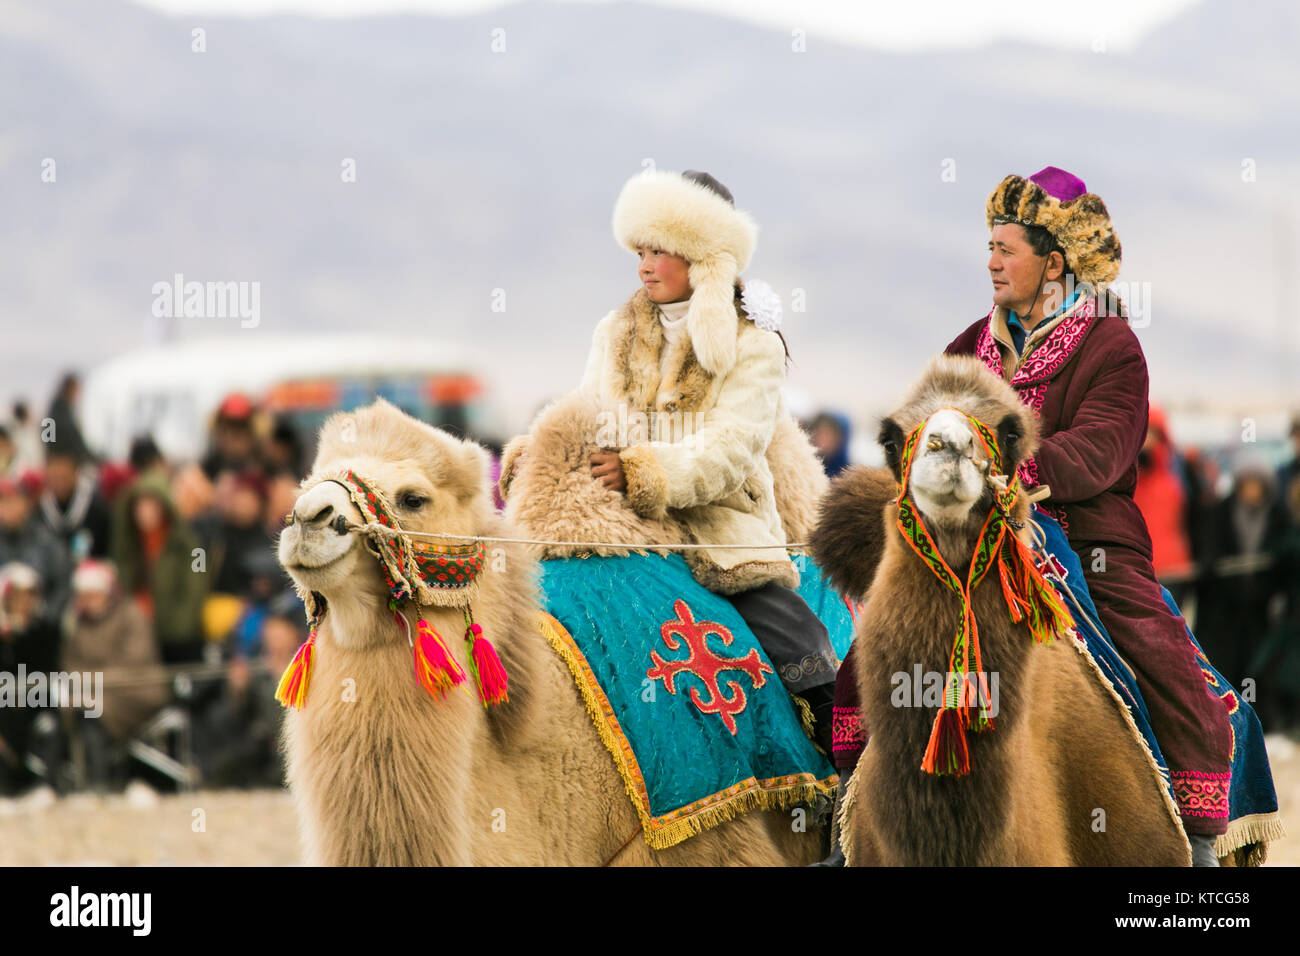 Aisholpan el Águila cazadora y otro jinete de camellos en el Festival Golden Eagle en Mongolia Foto de stock